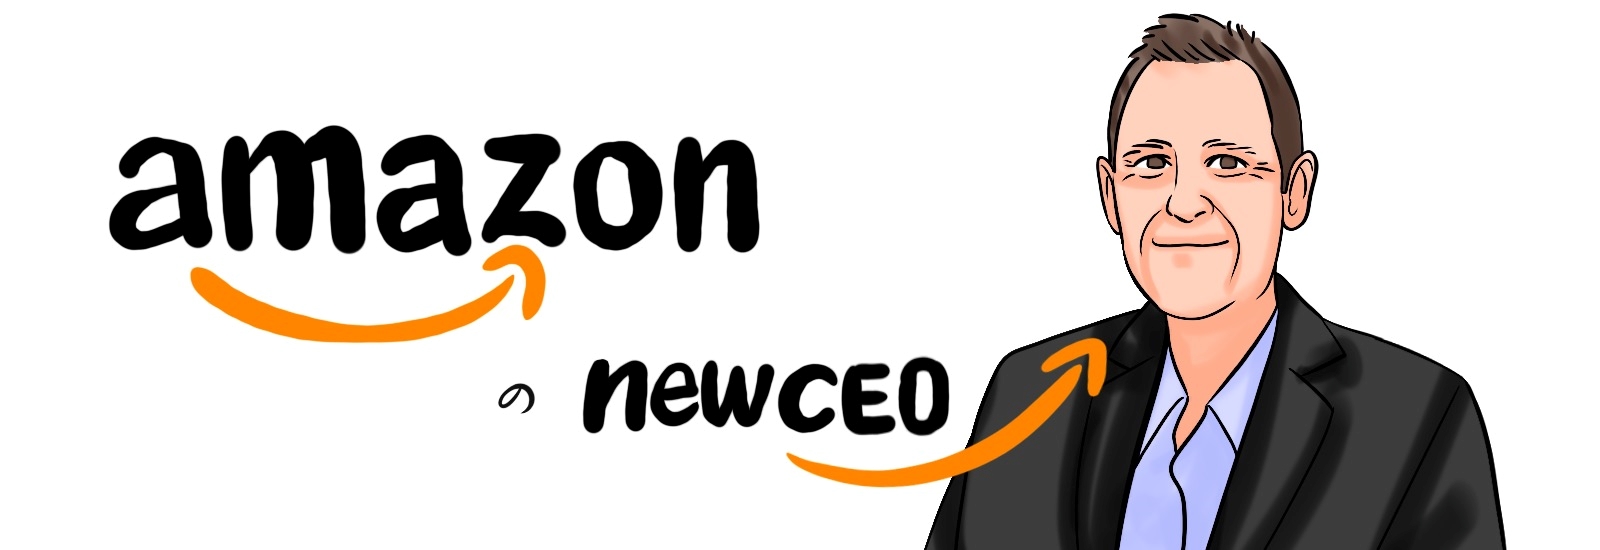 Amazonの社長になったアンディ・ジャシーについて徹底解説。貪欲な姿勢が無かった若者がAmazonのCEOとなるまで